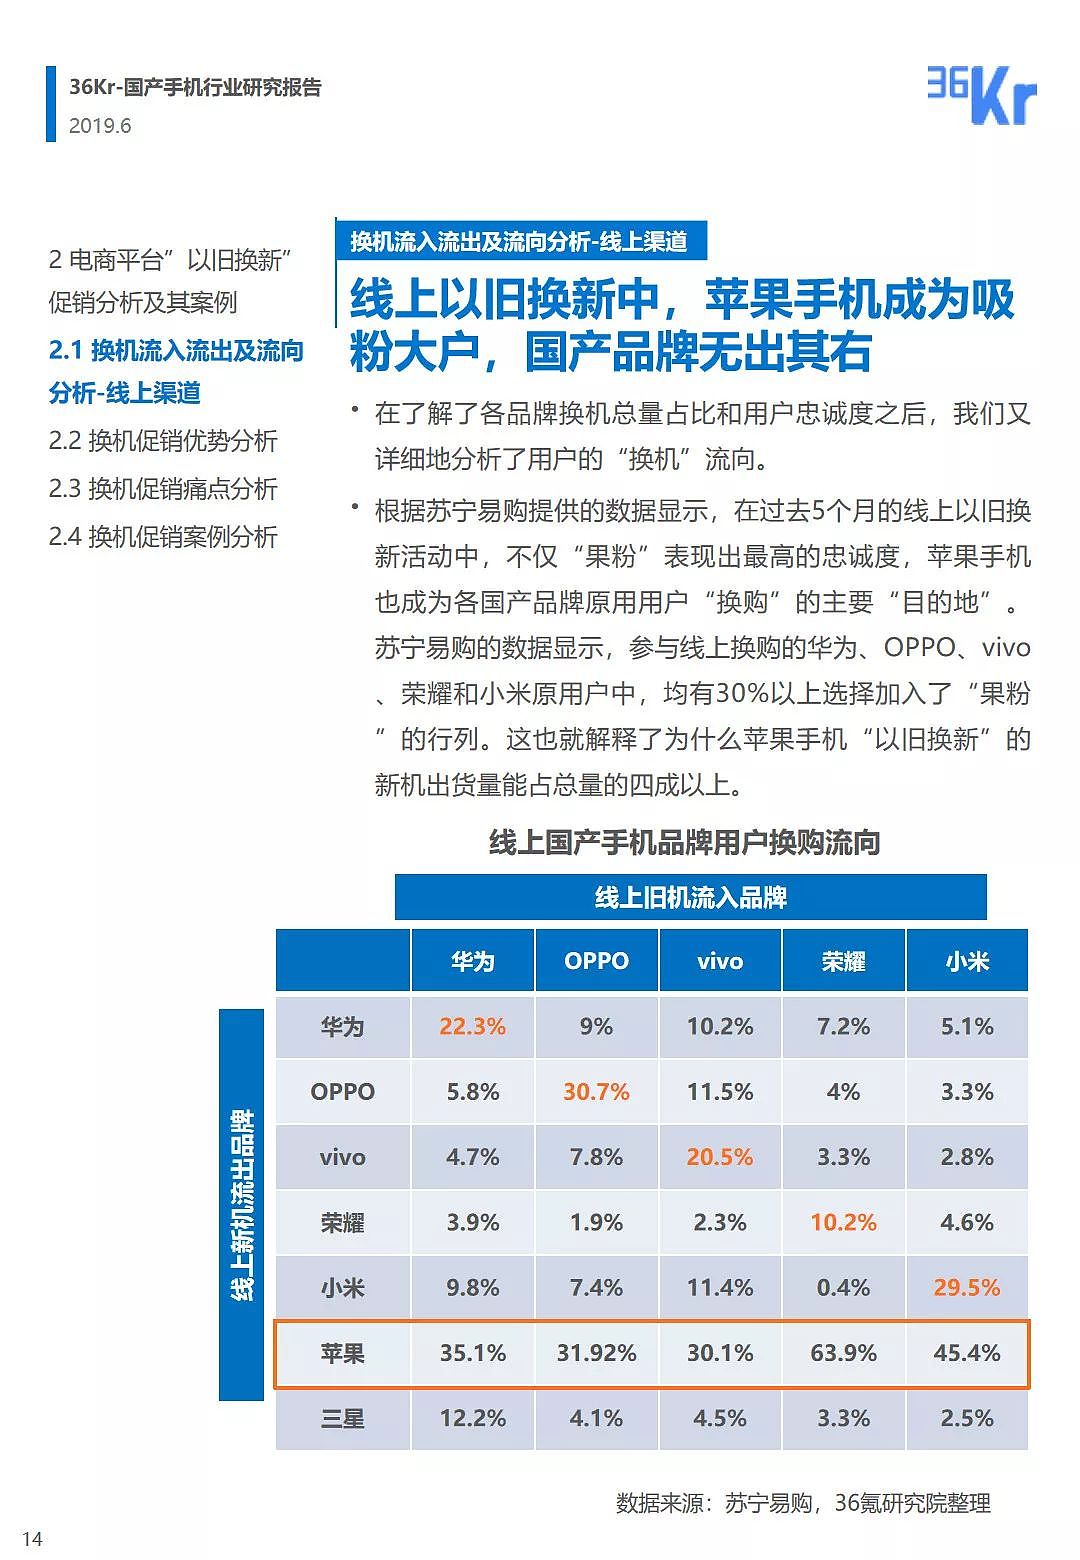 中国手机品牌市场营销研究报告 | 36氪研究 - 15